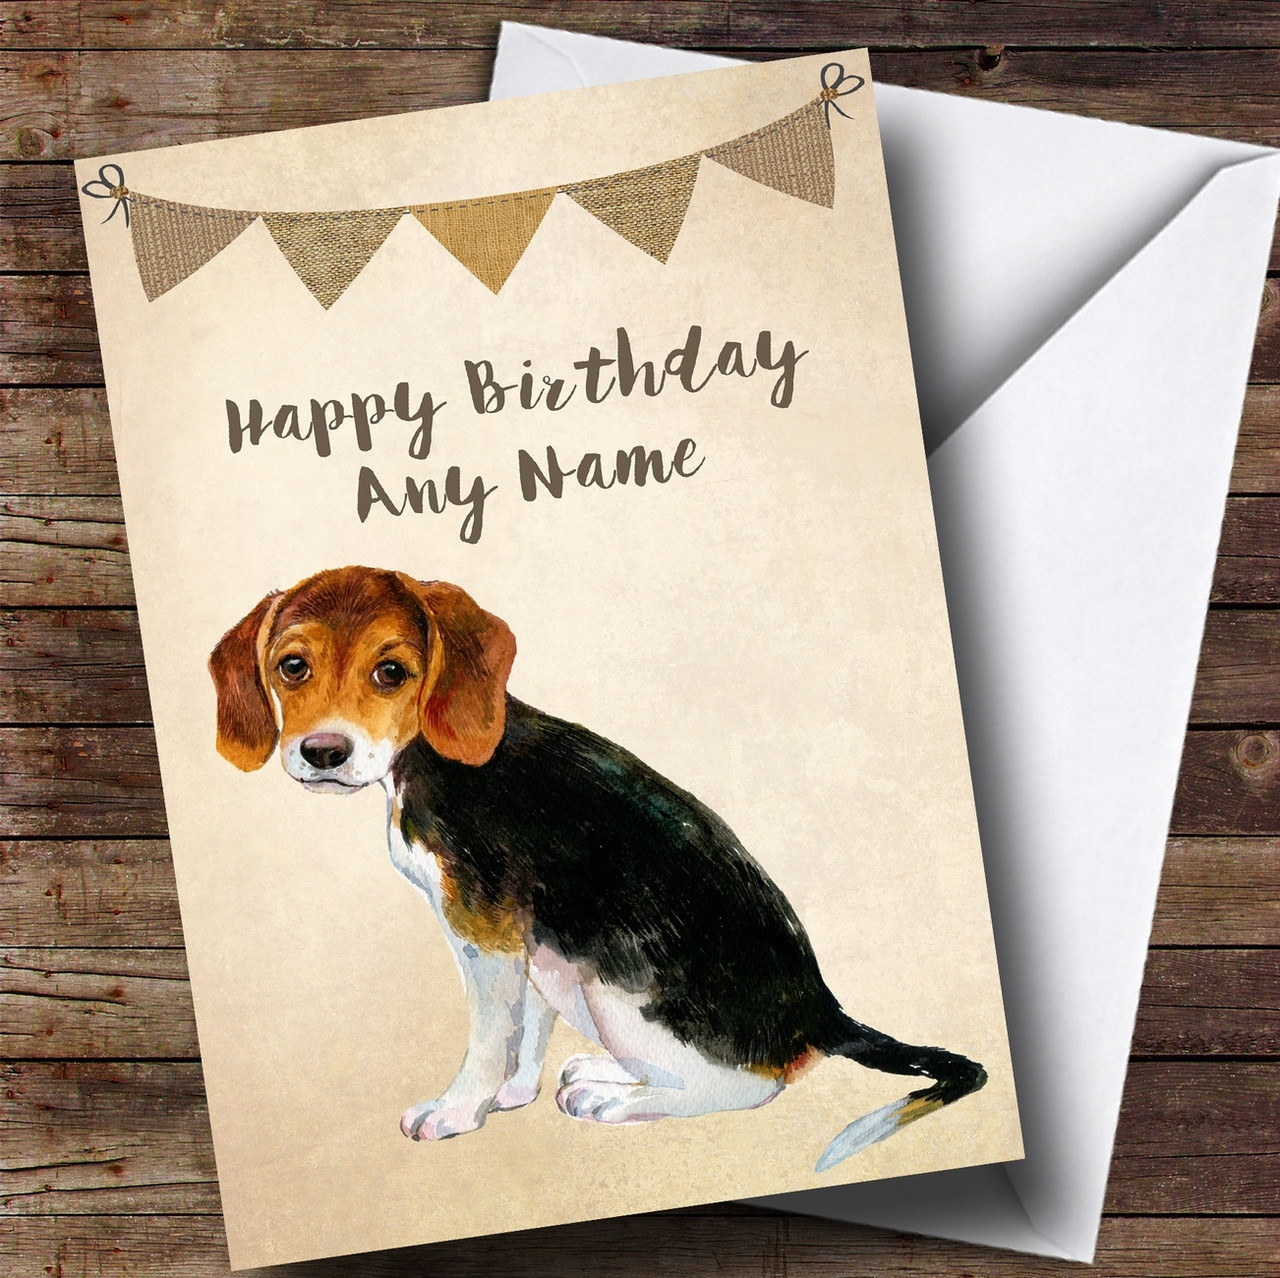 Happy Birthday Beagle Dog Images